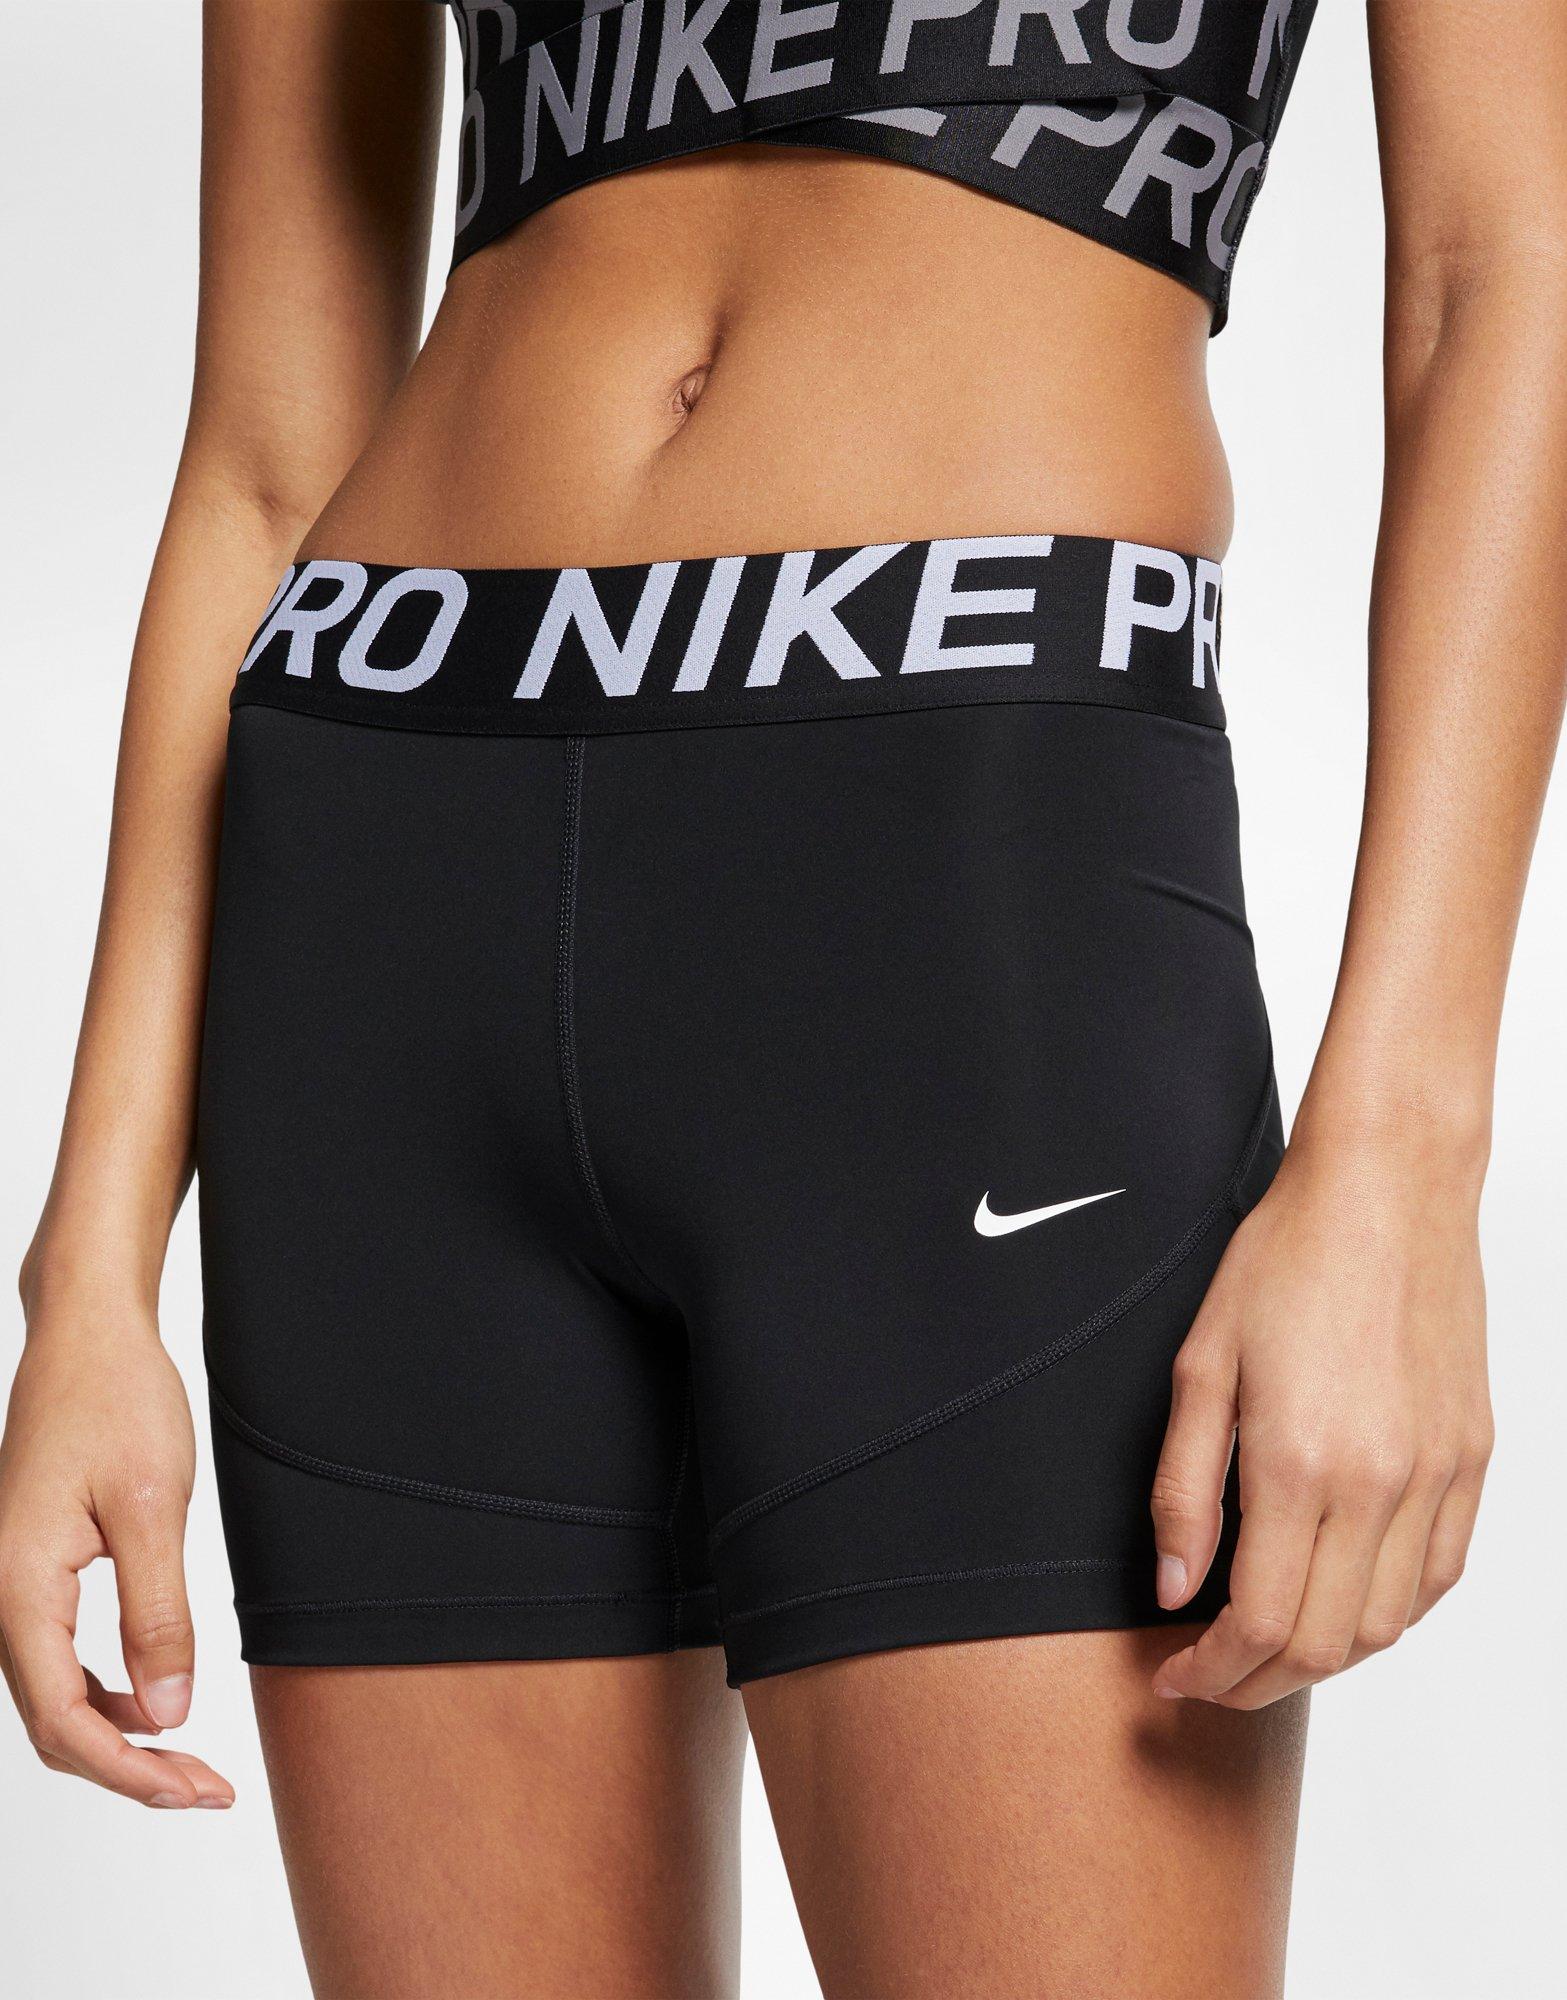 nike sports underwear women's